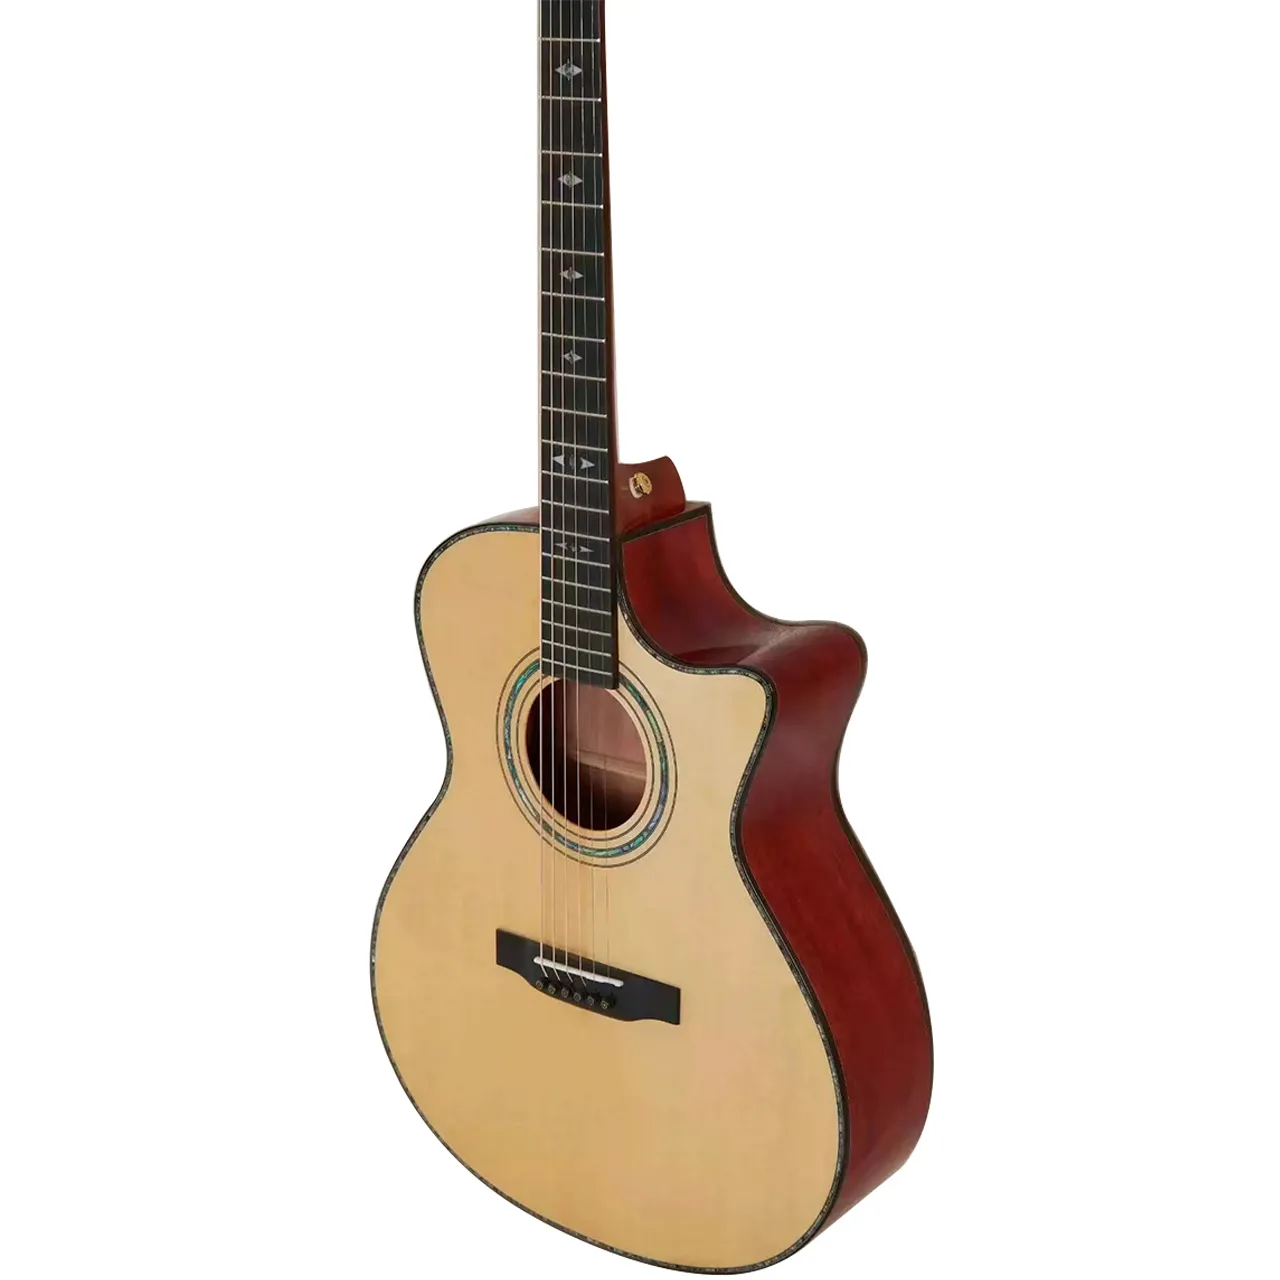 VOKI Edge Sittica Spruce guitare à doigt en bois massif avec touche en ébène